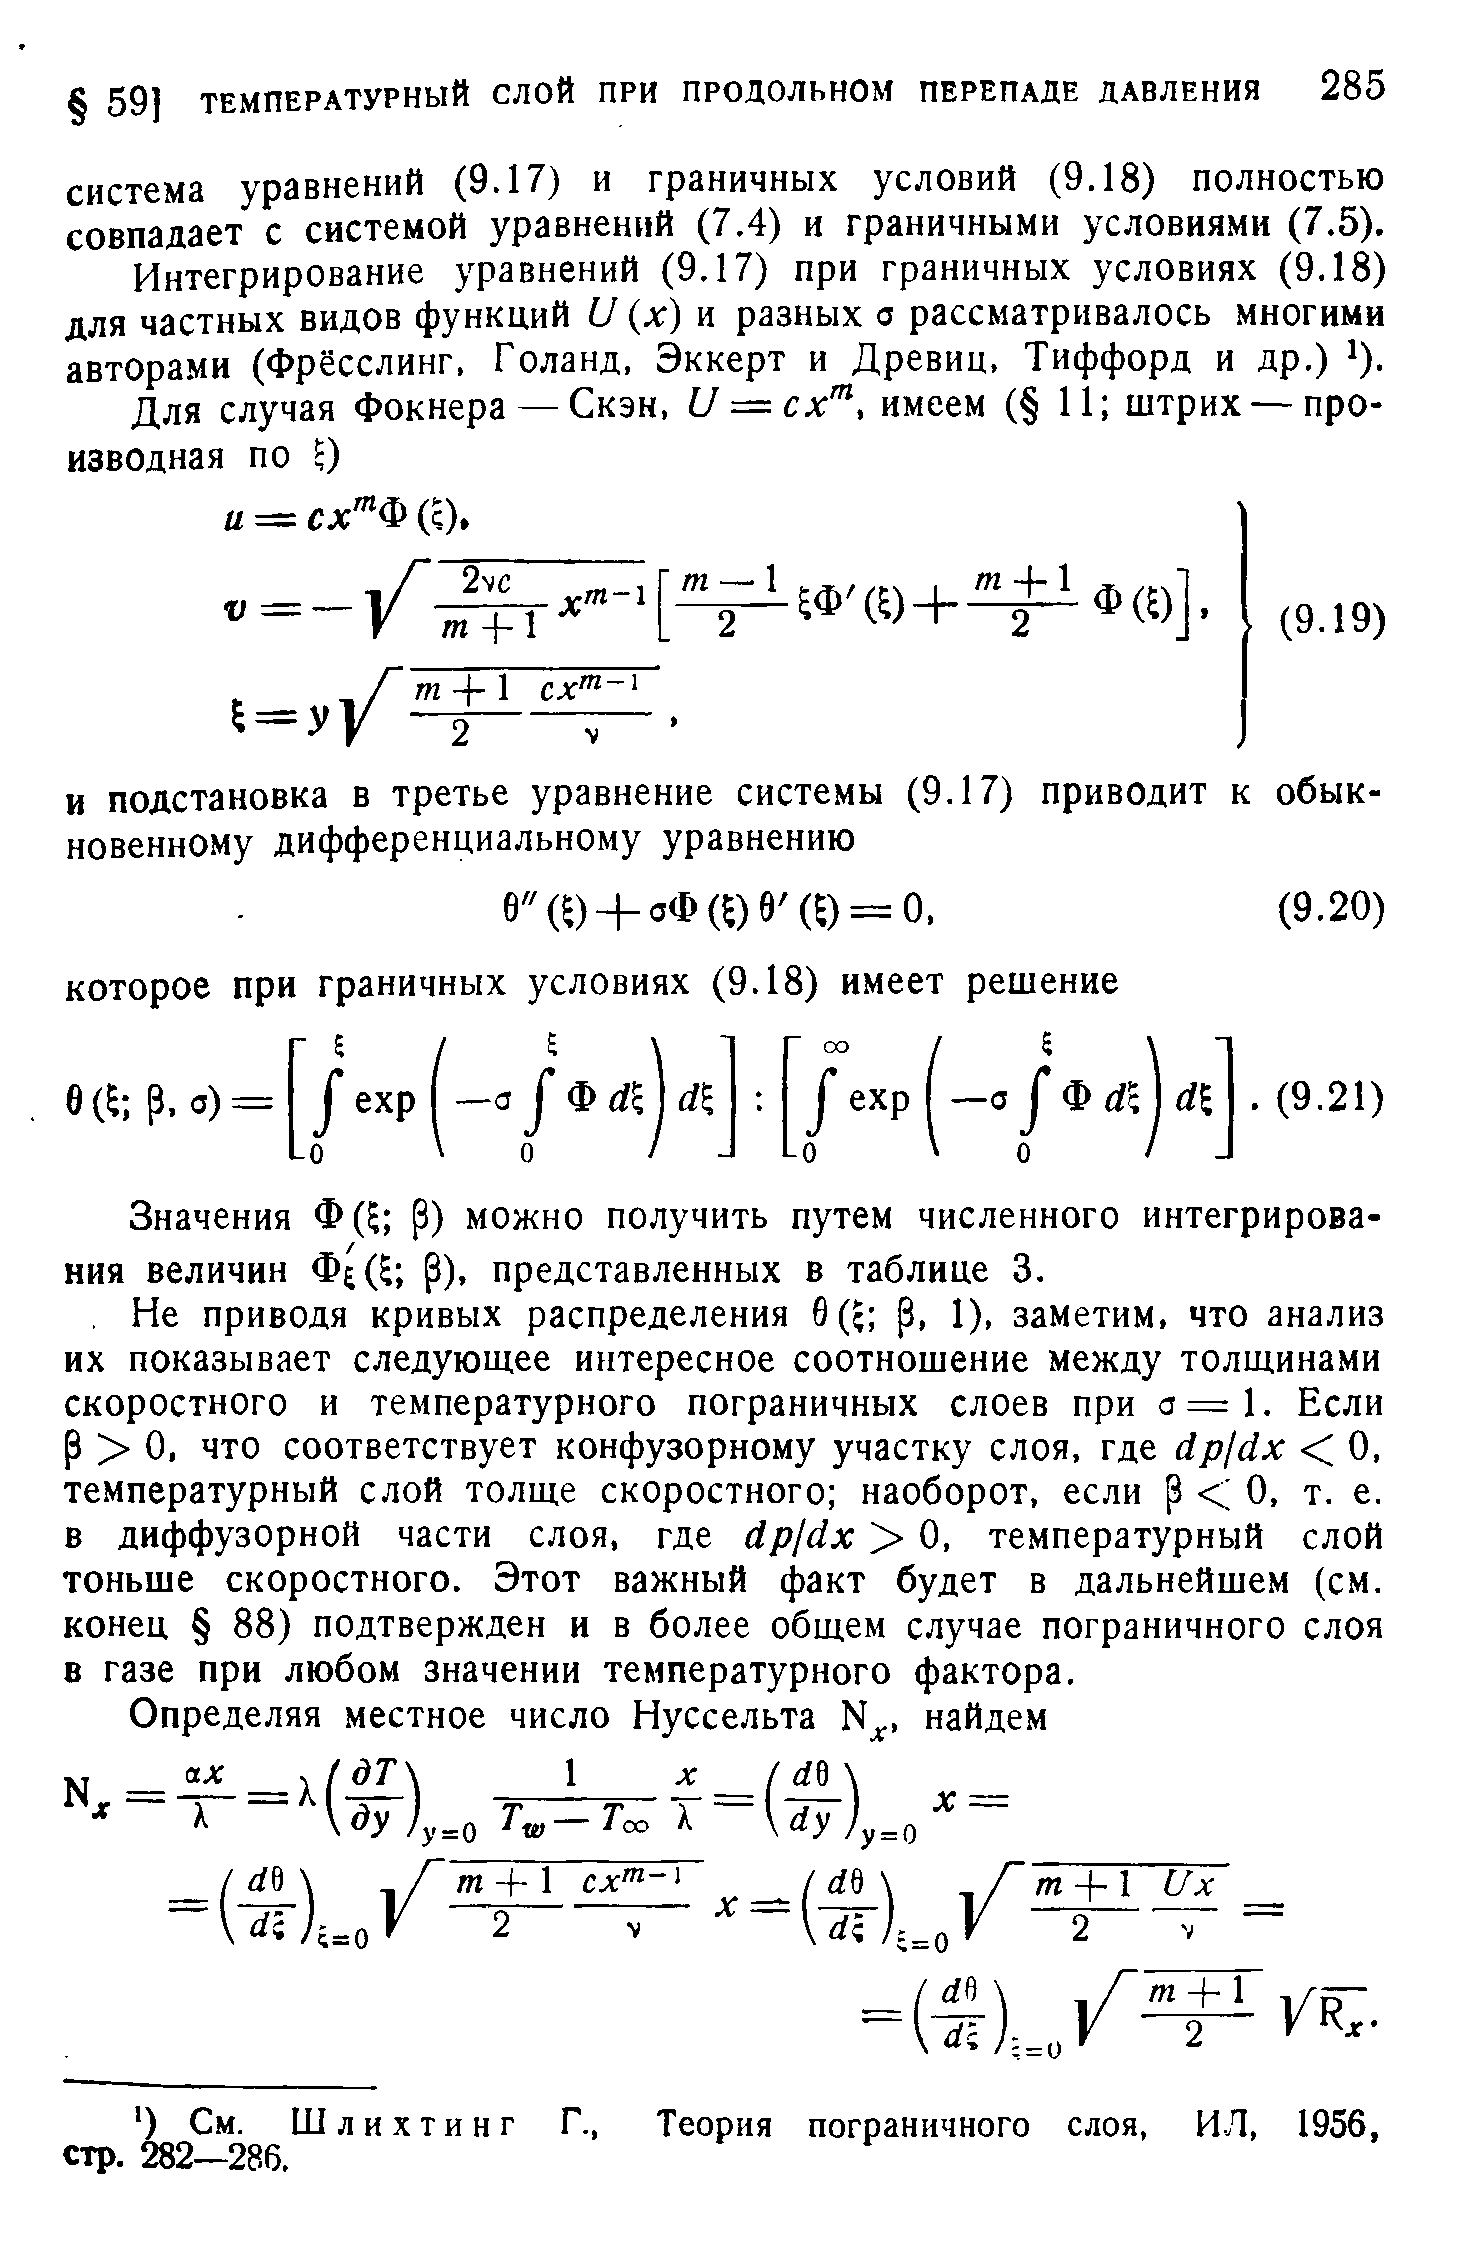 Значения Ф( р) можно получить путем численного интегрирования величин Фе(Е Р), представленных в таблице 3.